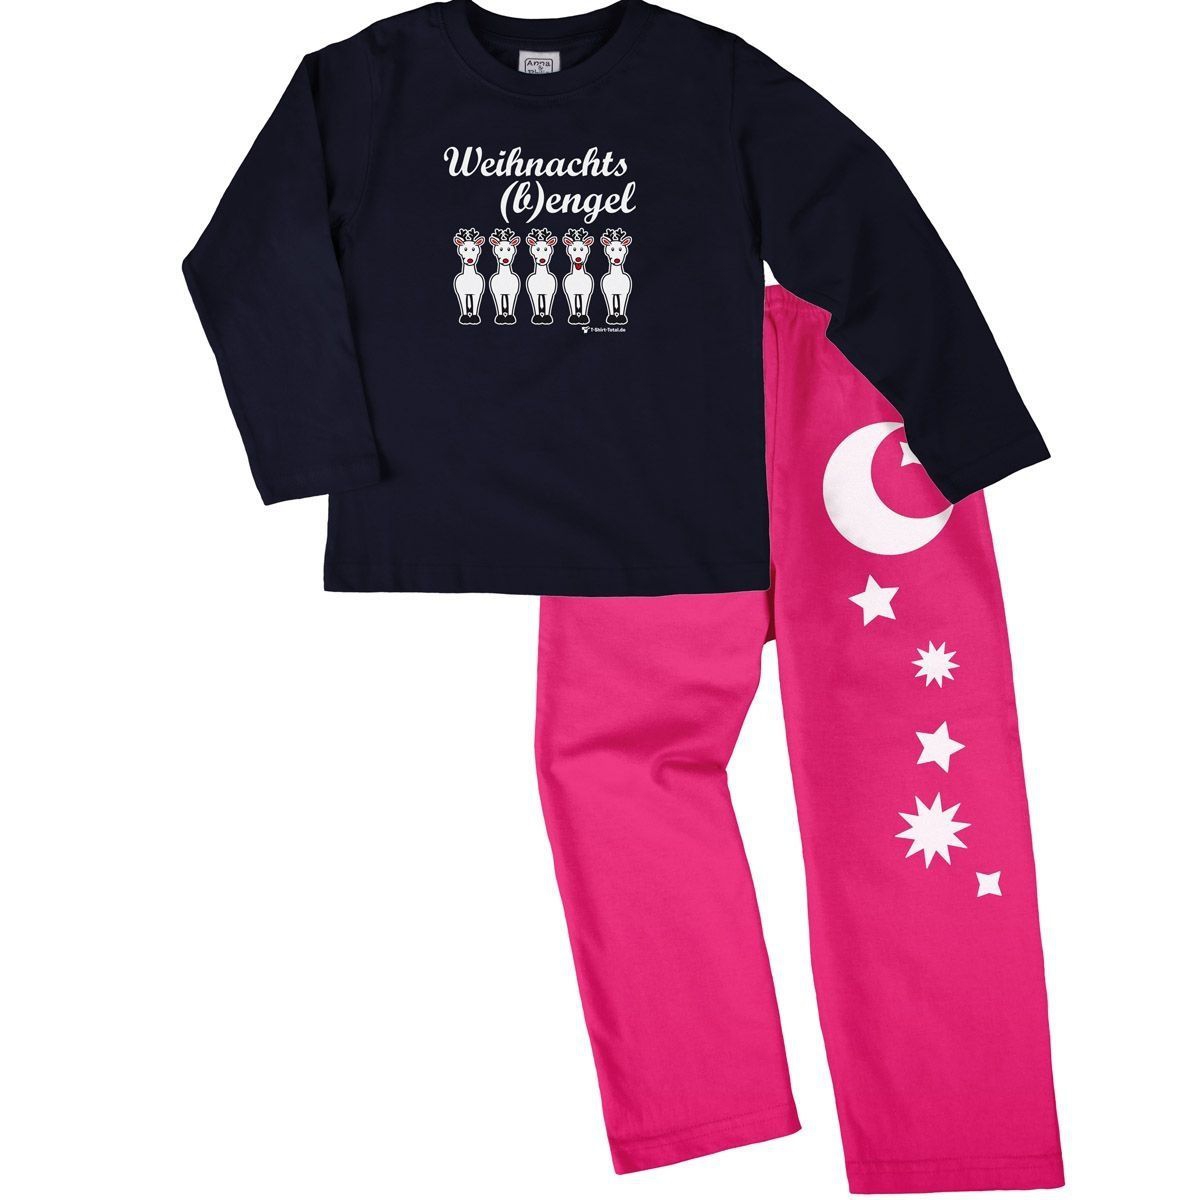 Weihnachtsbengel Pyjama Set navy / pink 92